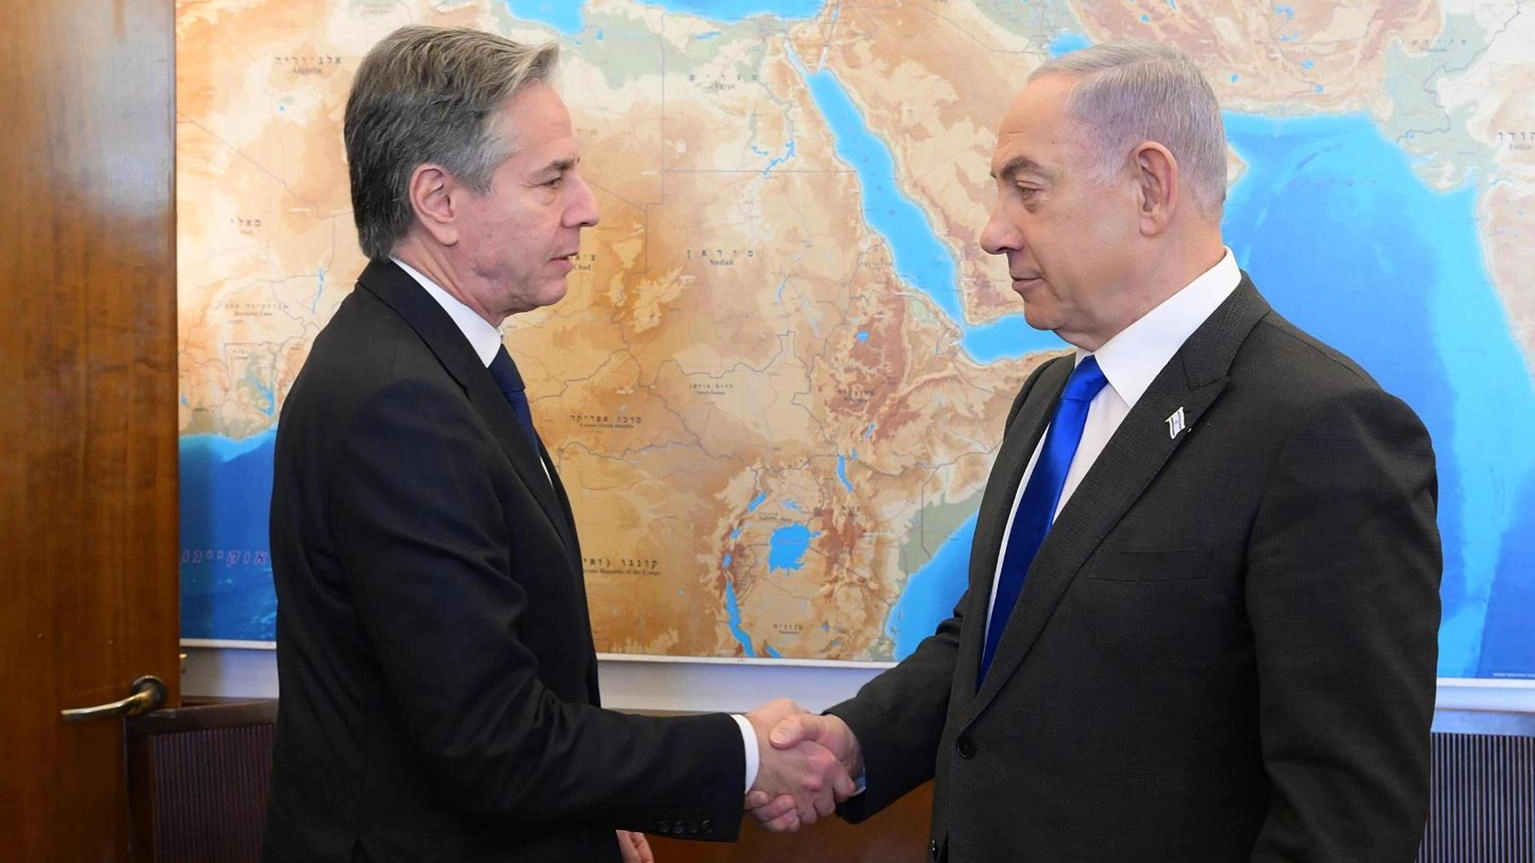 Ancora gelo con gli Usa. Israele annulla il summit: il capo dell’esercito non incontra Blinken